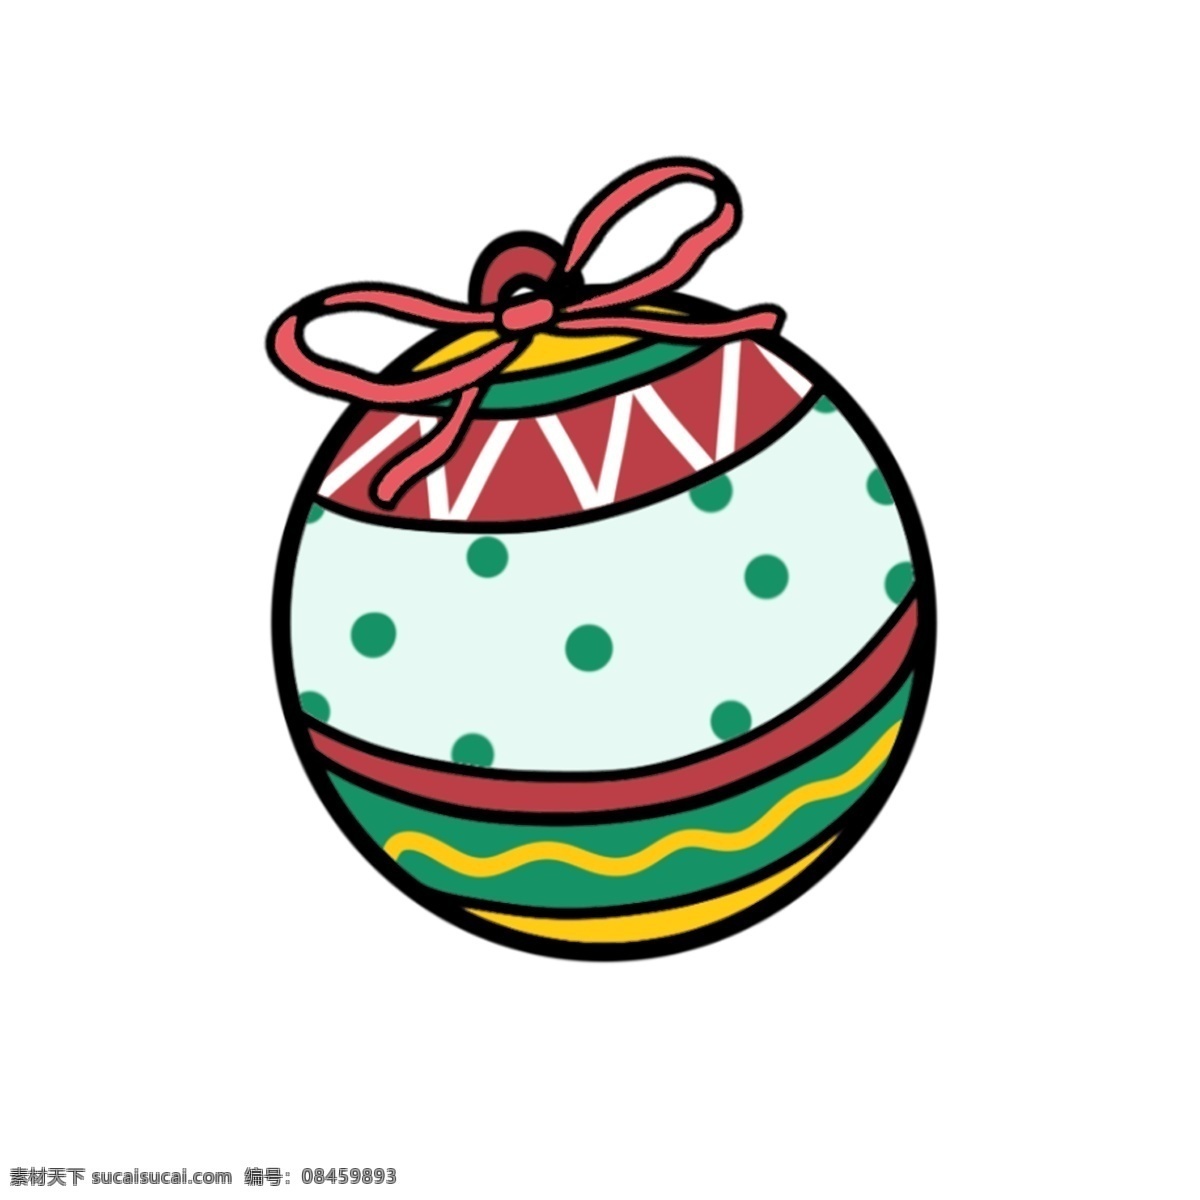 圣诞节 圣诞 装饰 球 卡通 可爱 元素 圣诞装饰球